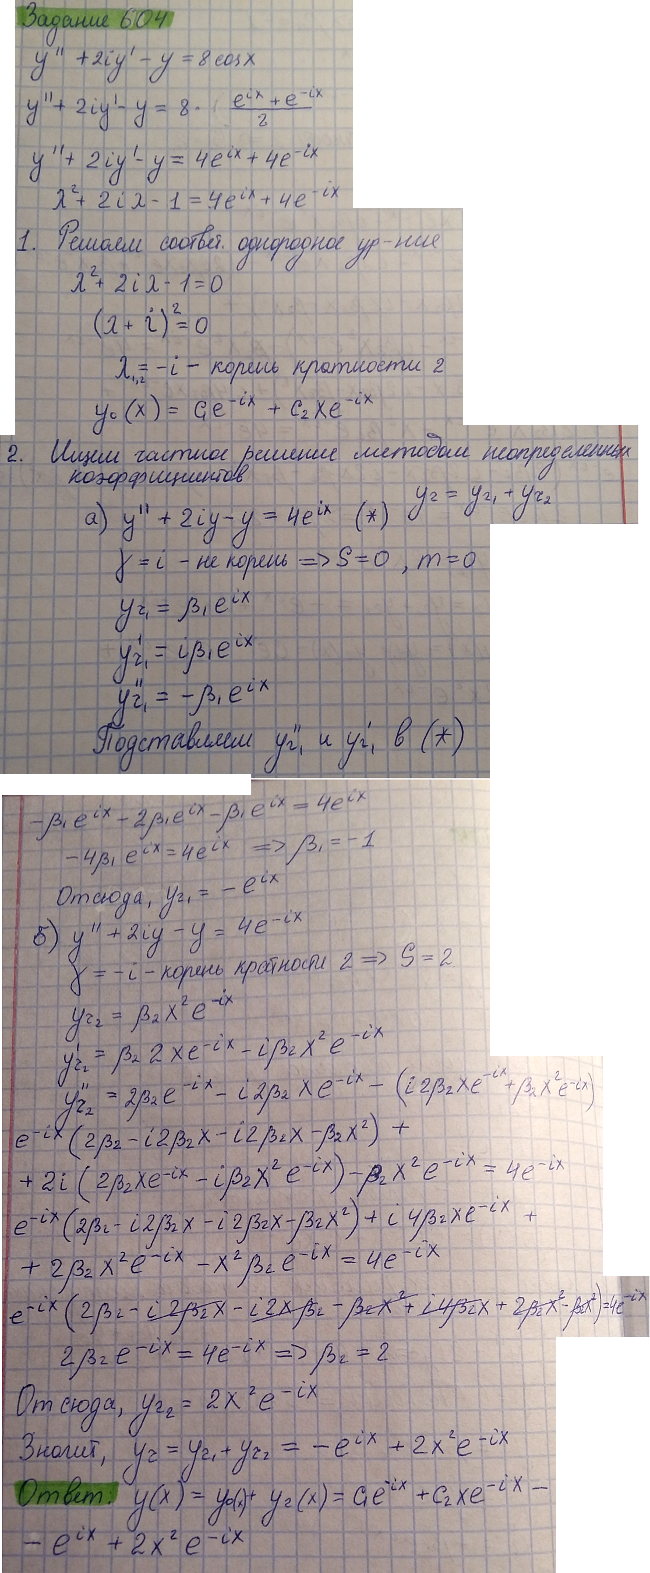 Линейные уравнения с постоянными коэффициентами - решение задачи 604